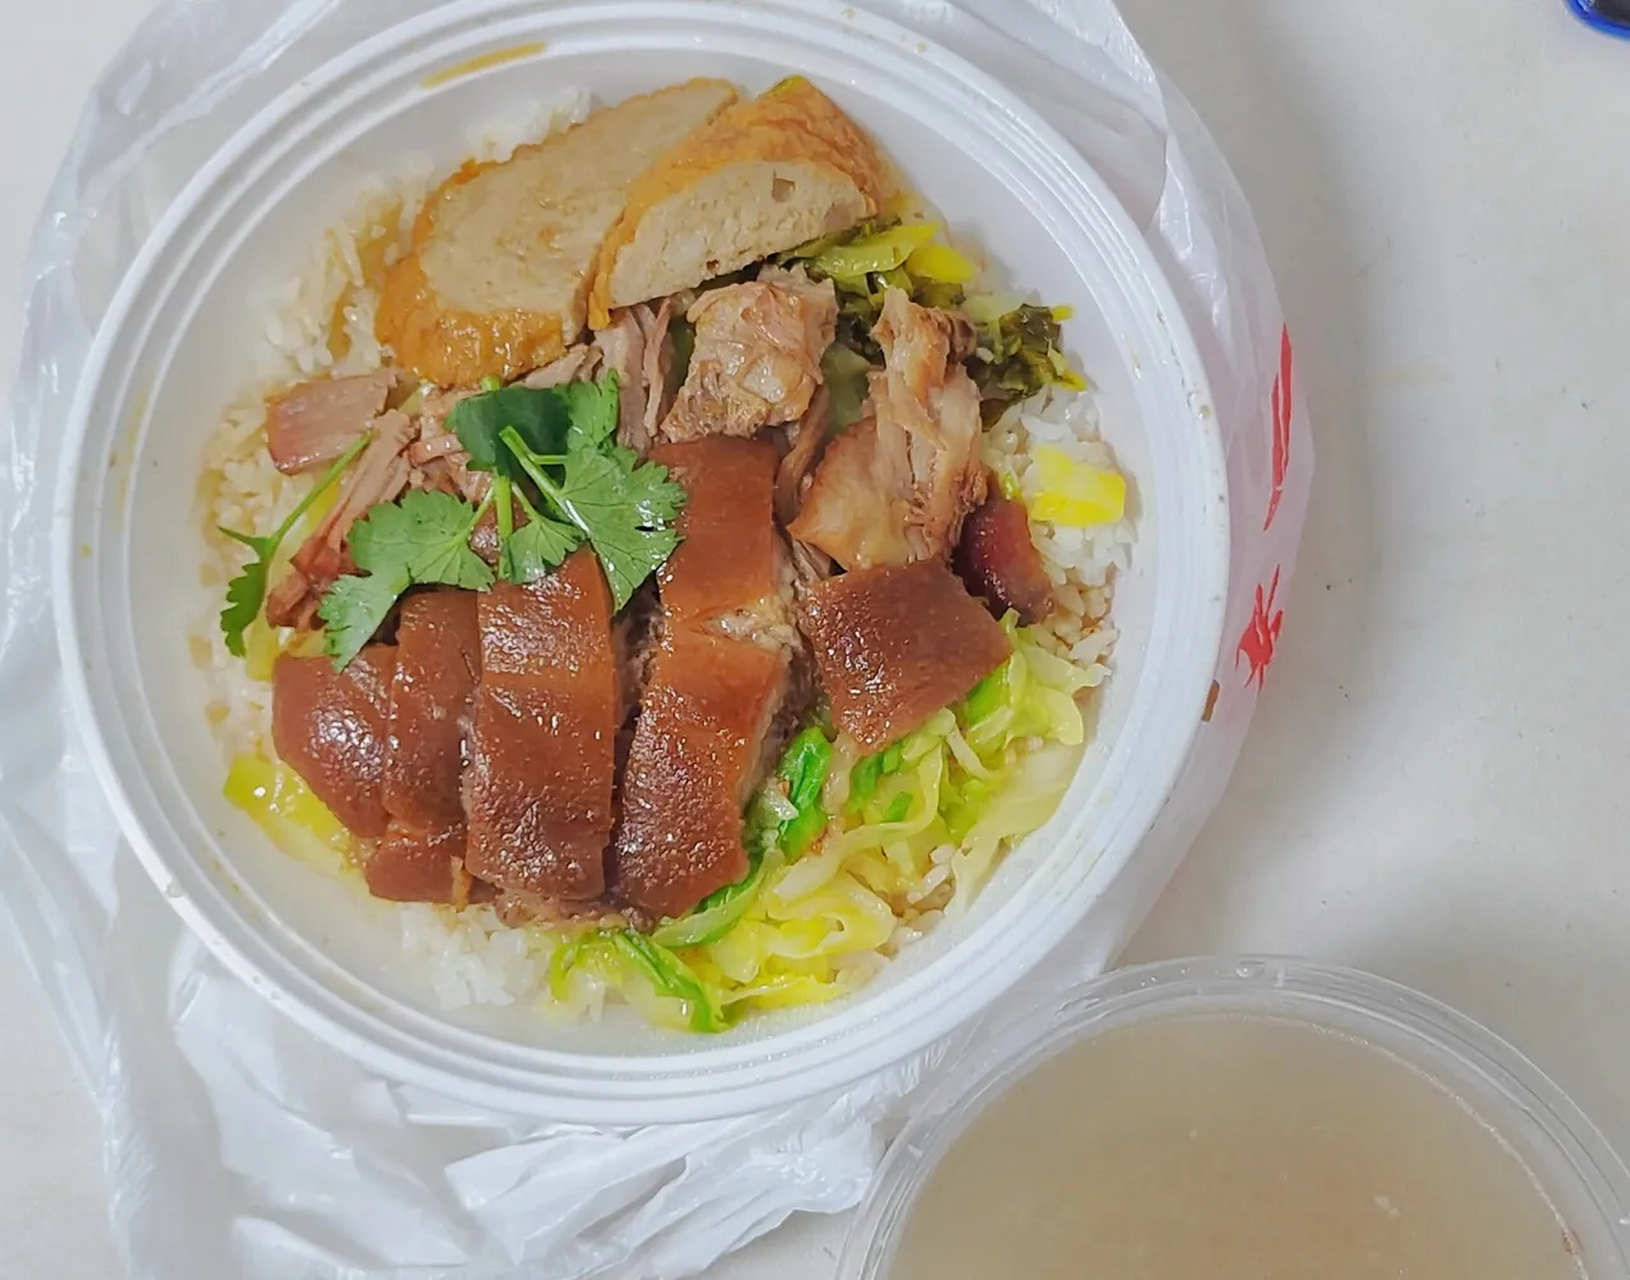 这是深圳15块钱的猪脚饭,有猪脚,白菜,酸菜,肉卷